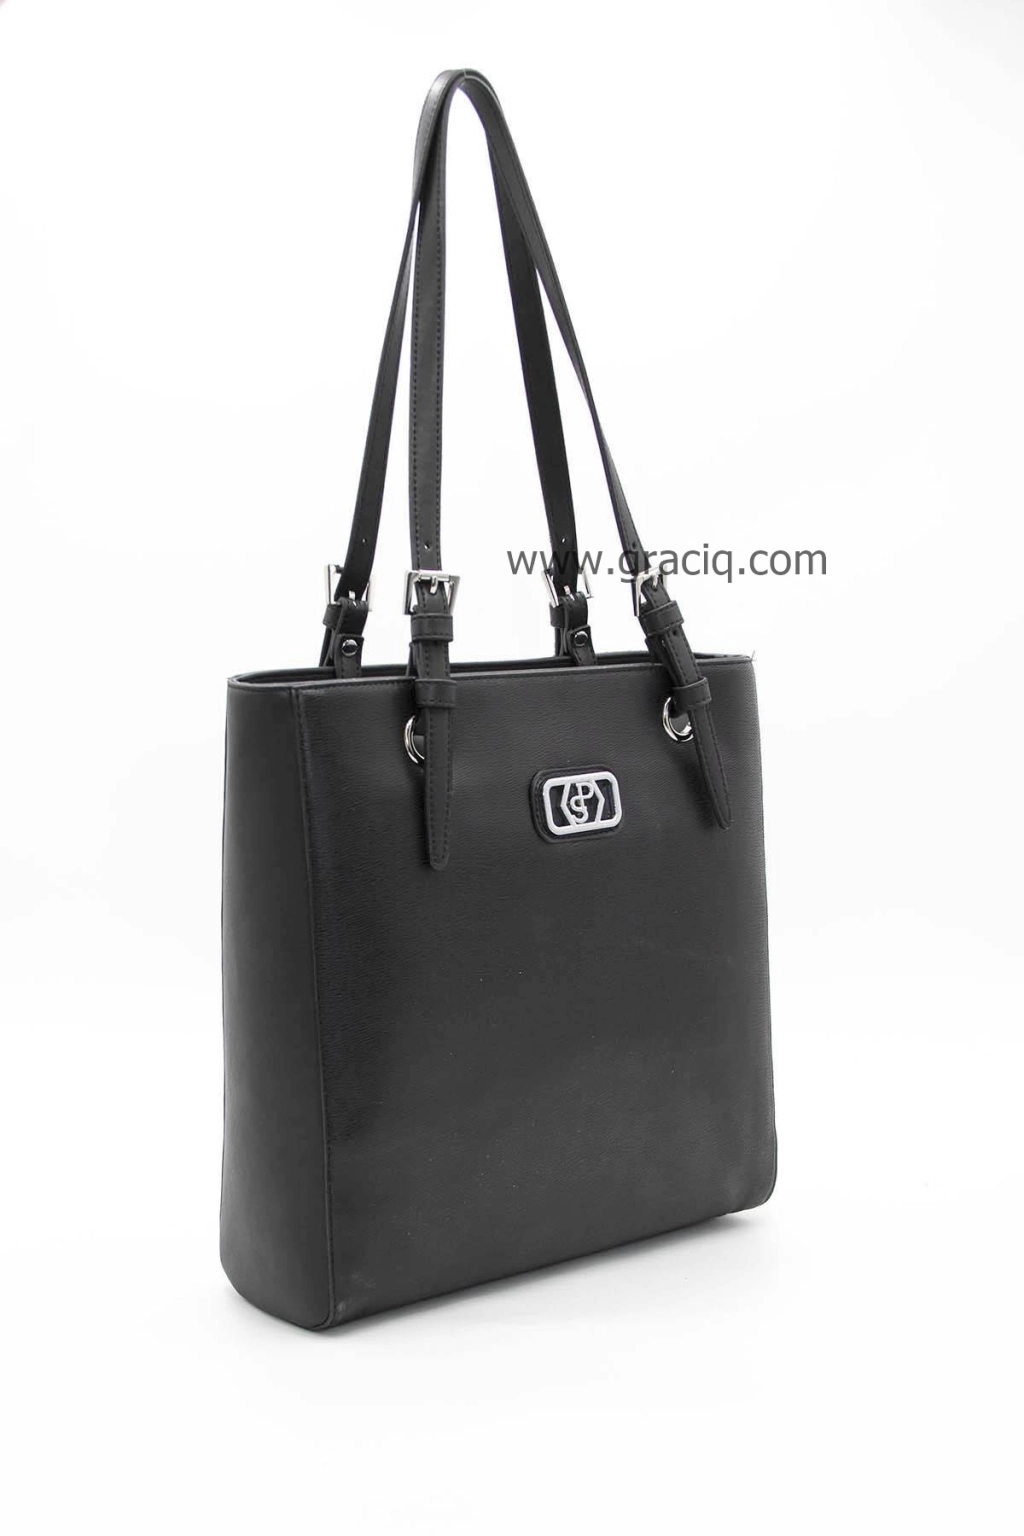 Дамска чанта Silver&polo в цвят черен